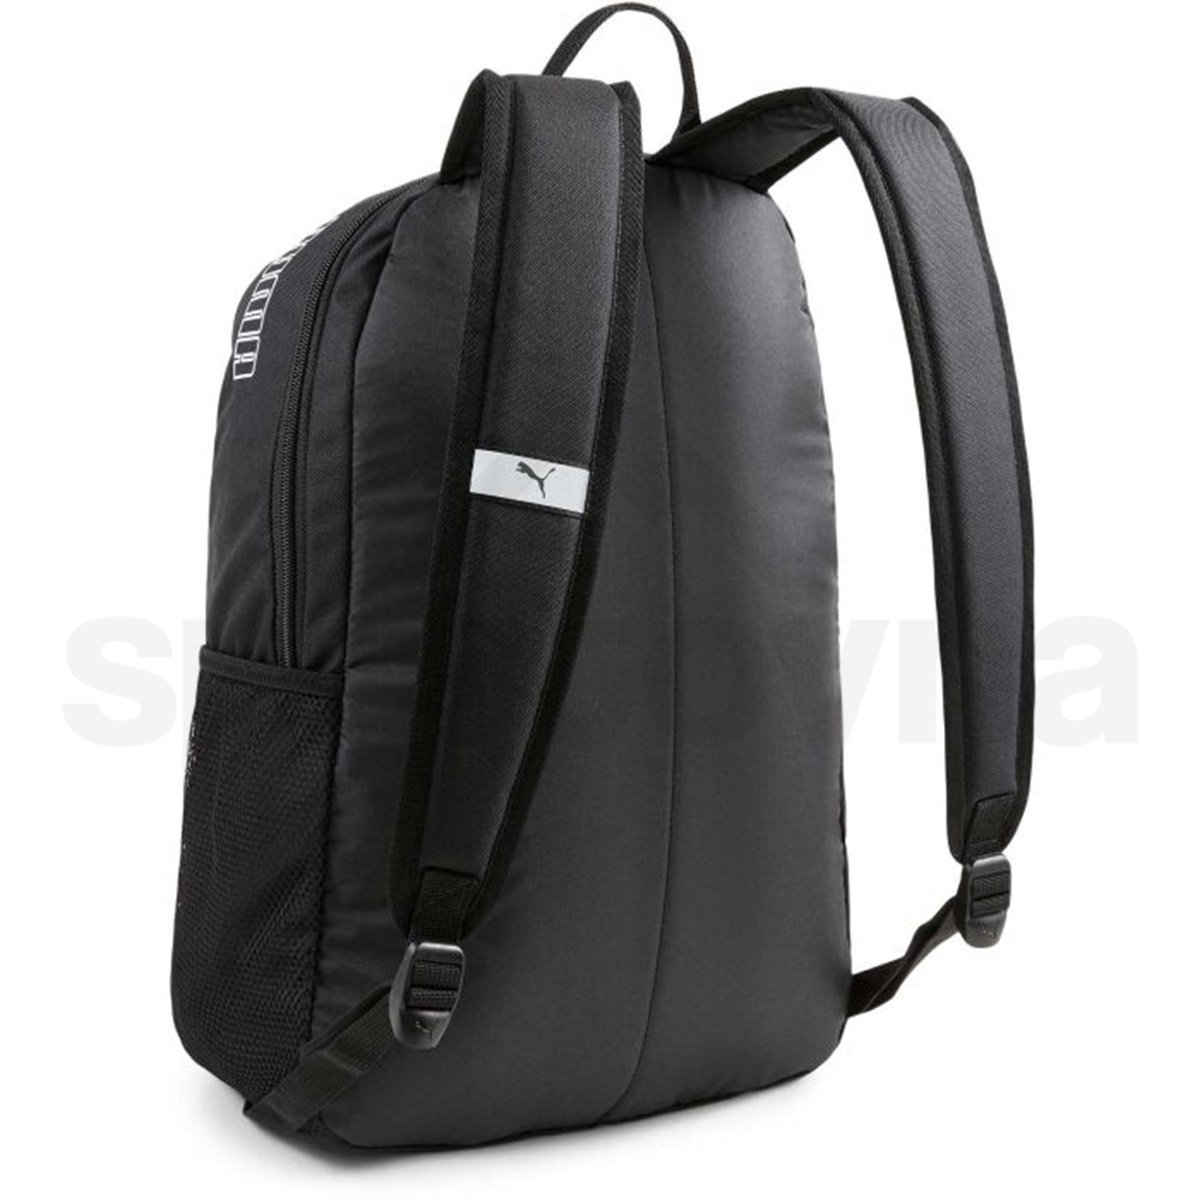 Batoh Puma Phase Backpack II - černá